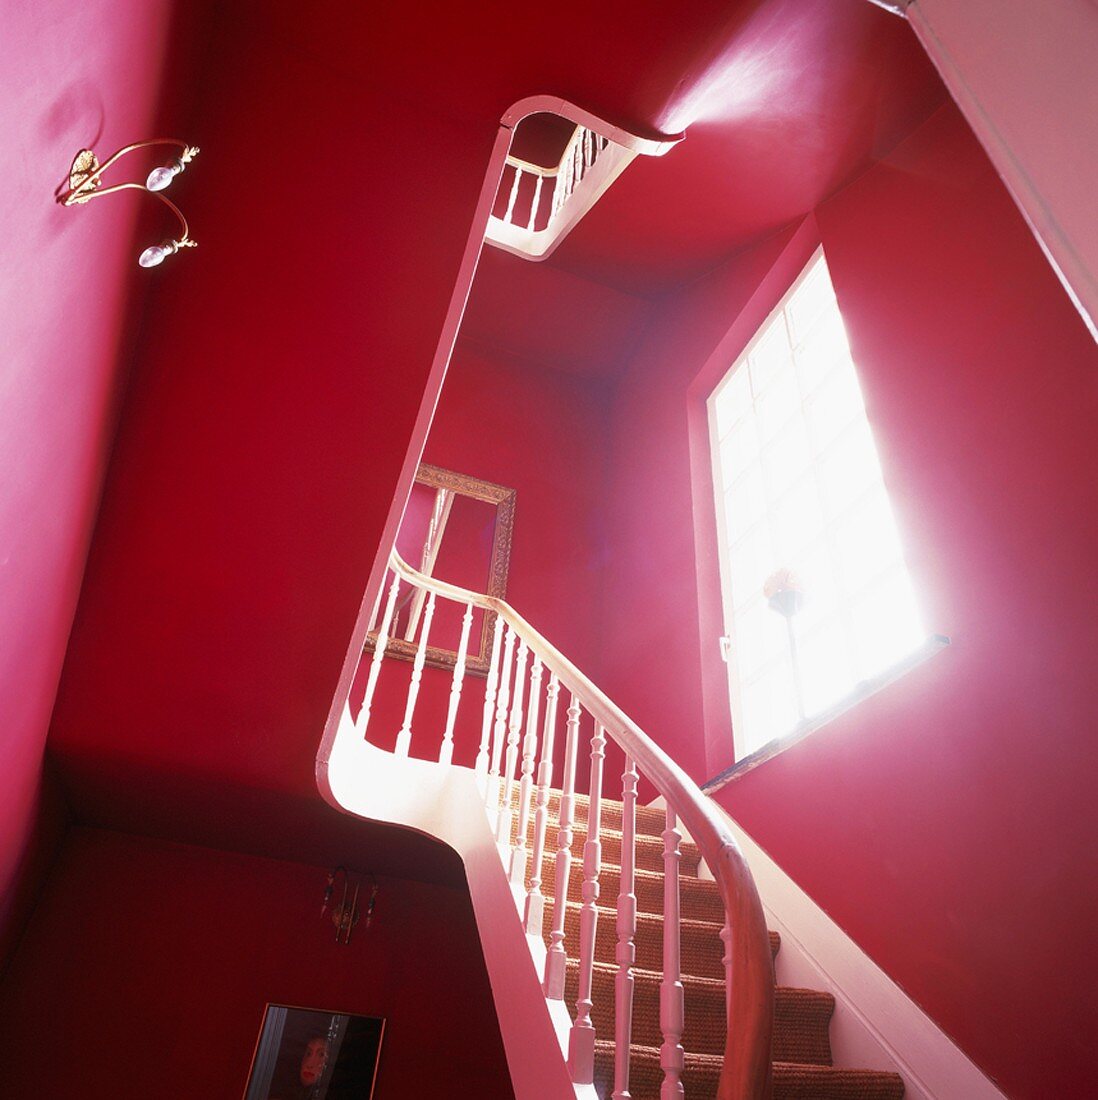 Klassik trifft auf Pop Art: Ein rotes Treppenhaus